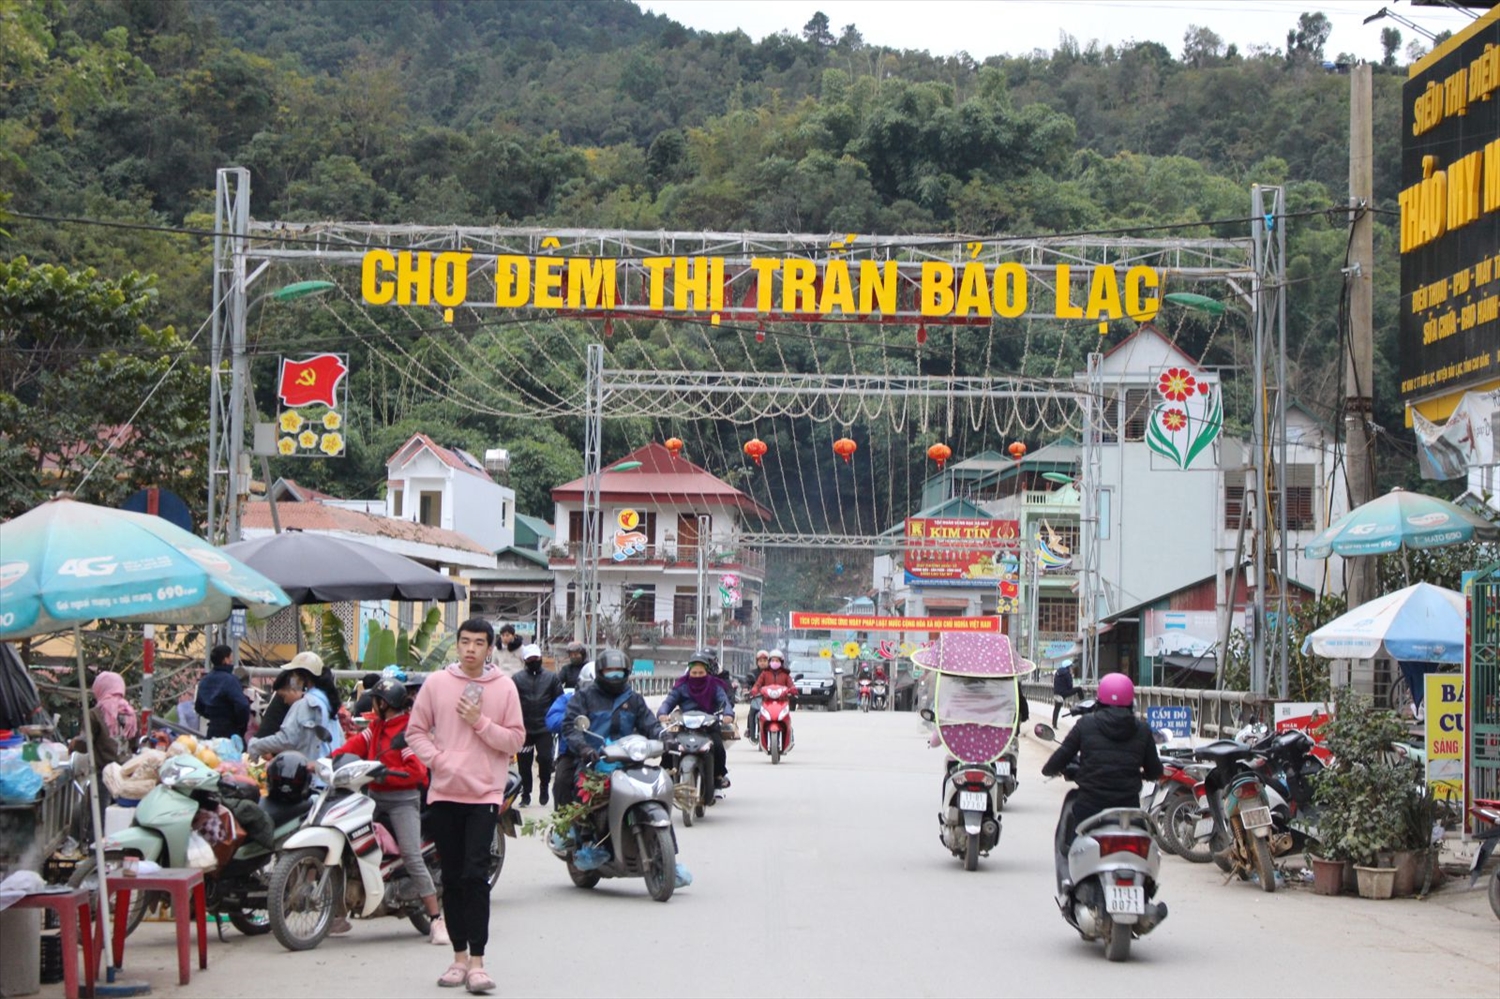 Vùng đồng bào DTTS và miền núi đã khoác lên mình diện mạo mới, công tác giảm nghèo đạt nhiều kết quả khả quan (Trong ảnh: Chợ đêm thị trấn Bảo Lạc, tỉnh Cao Bằng)